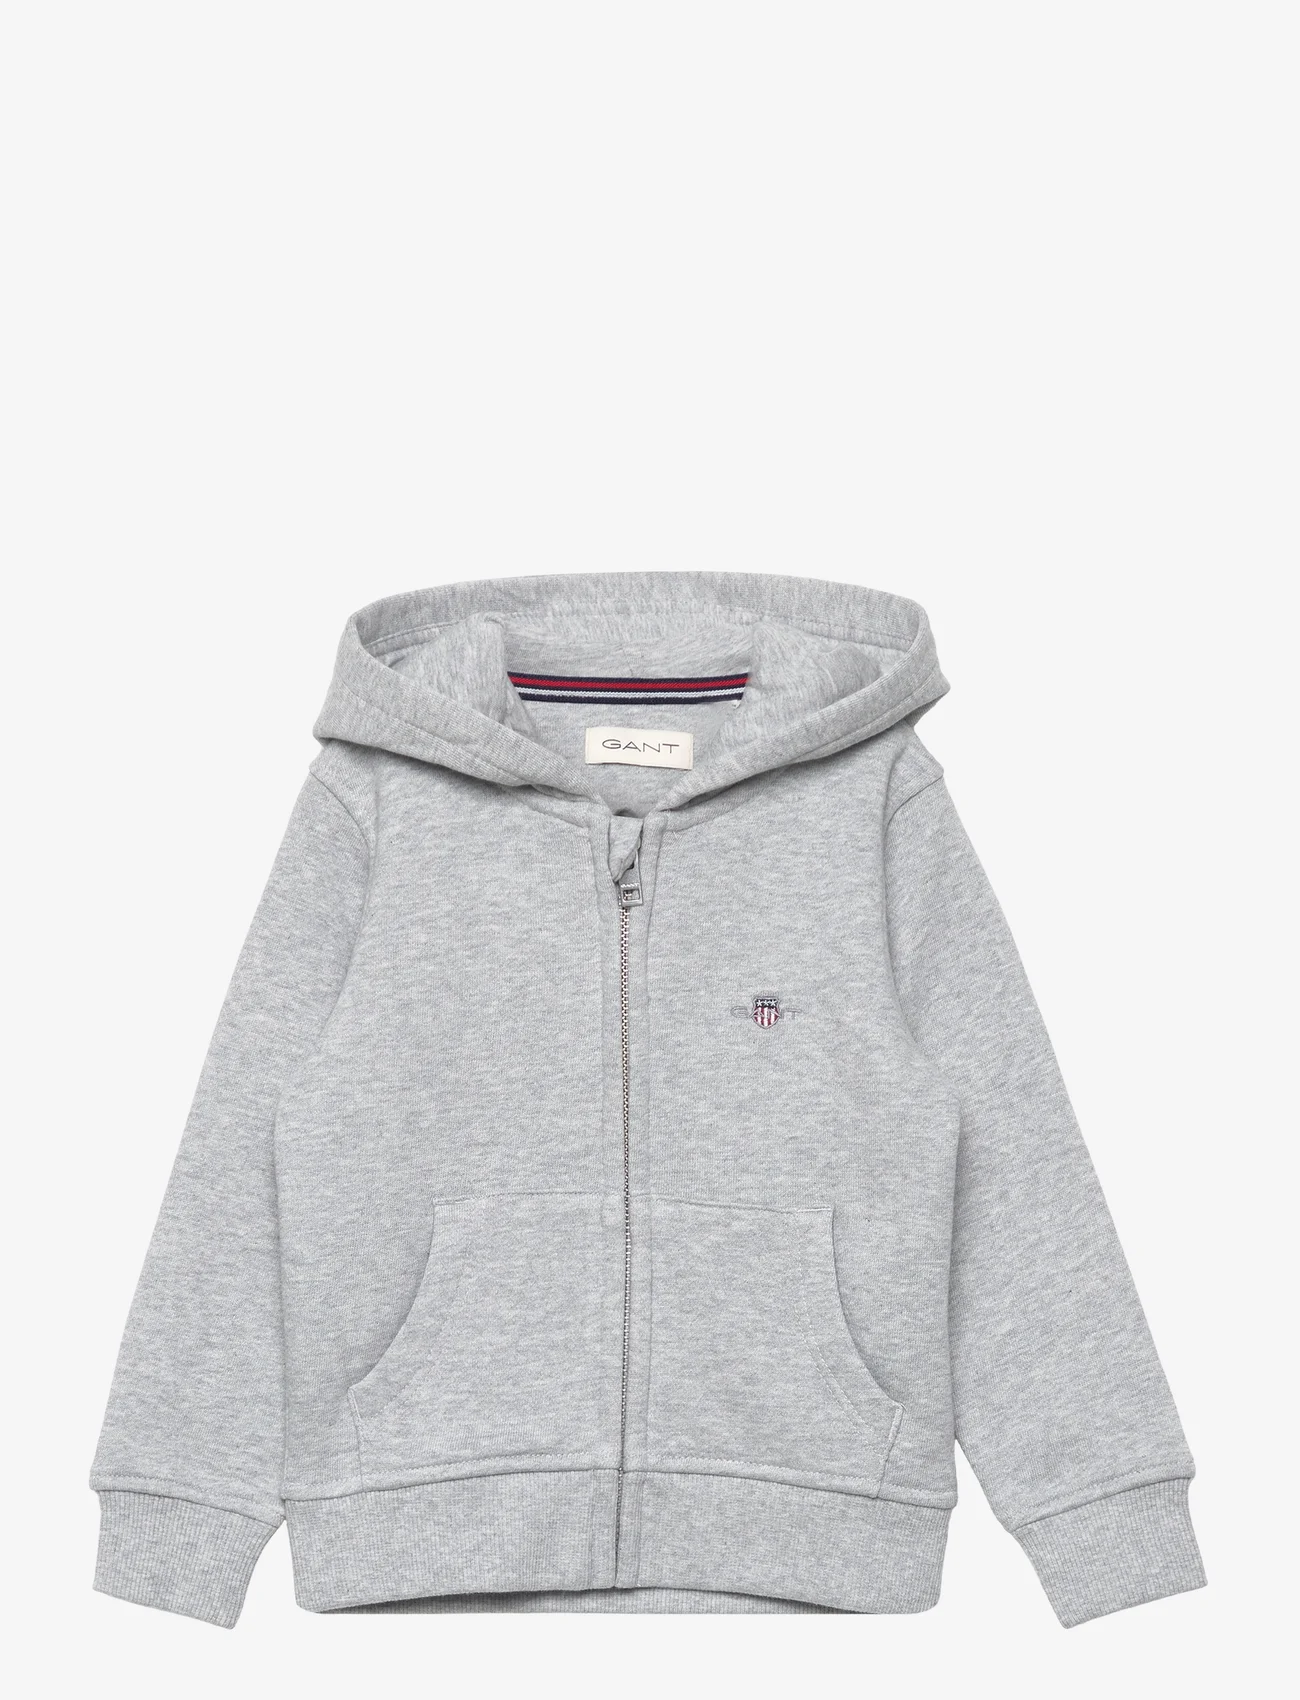 GANT - SHIELD ZIP HOODIE - hoodies - light grey melange - 0